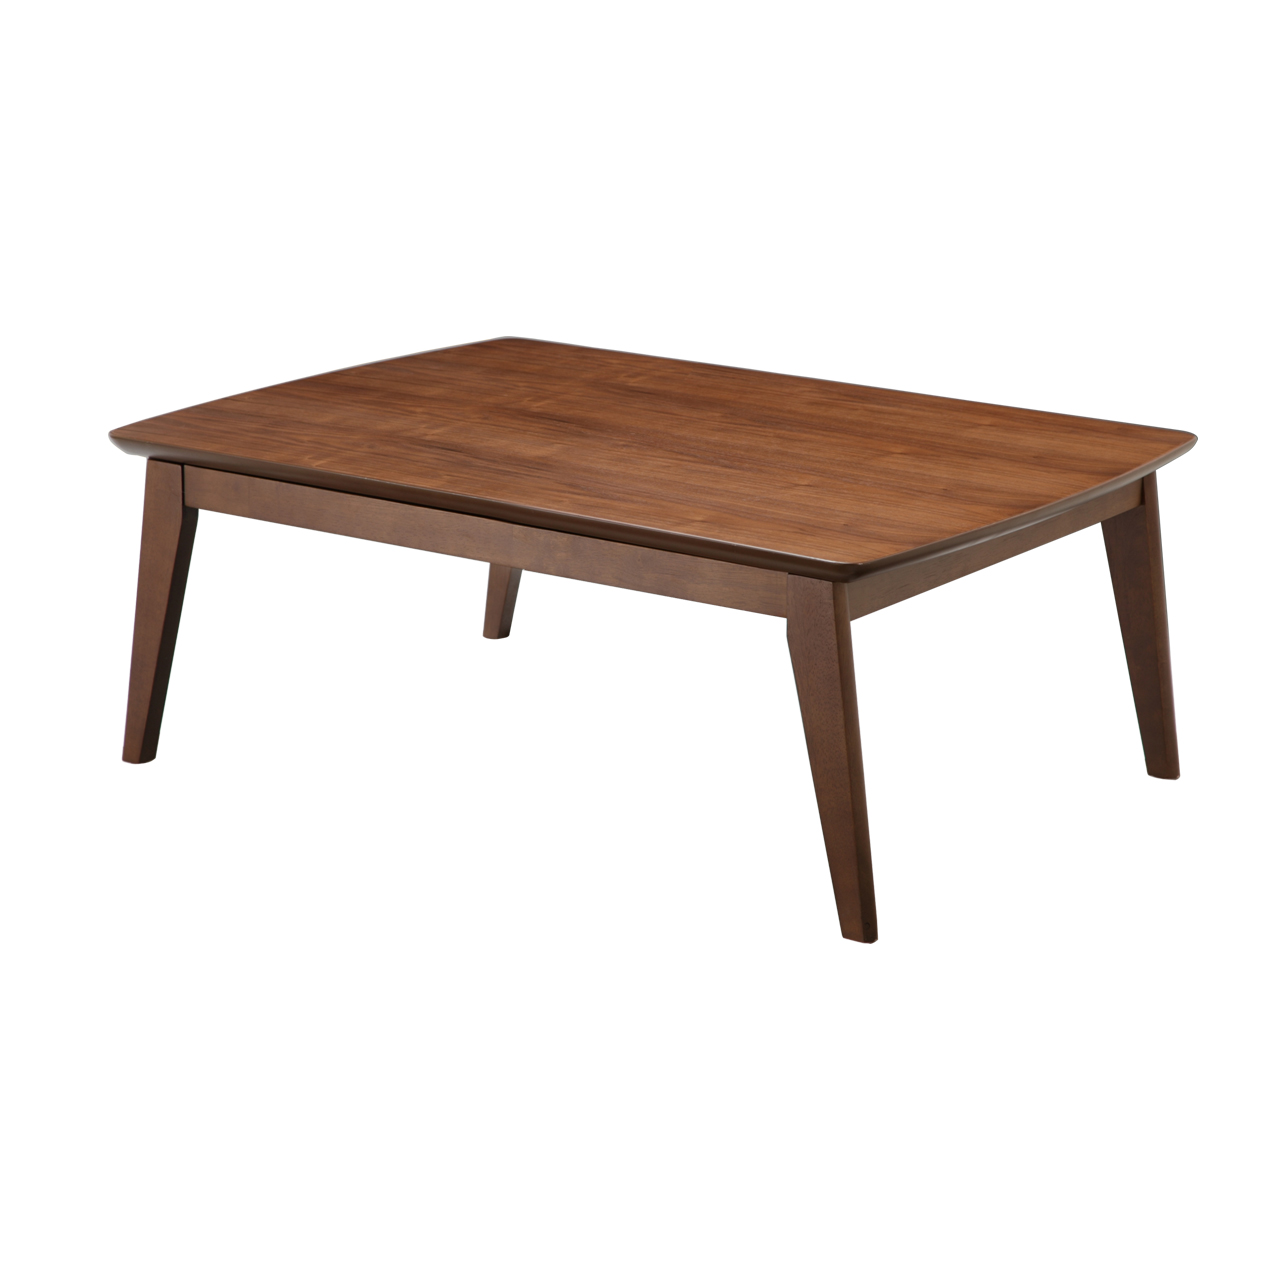 こたつ こたつテーブル 北欧 長方形 北欧デザインスクエアこたつ イーズ 単品 105x75cm おしゃれ 天然木 ウォールナット AW10